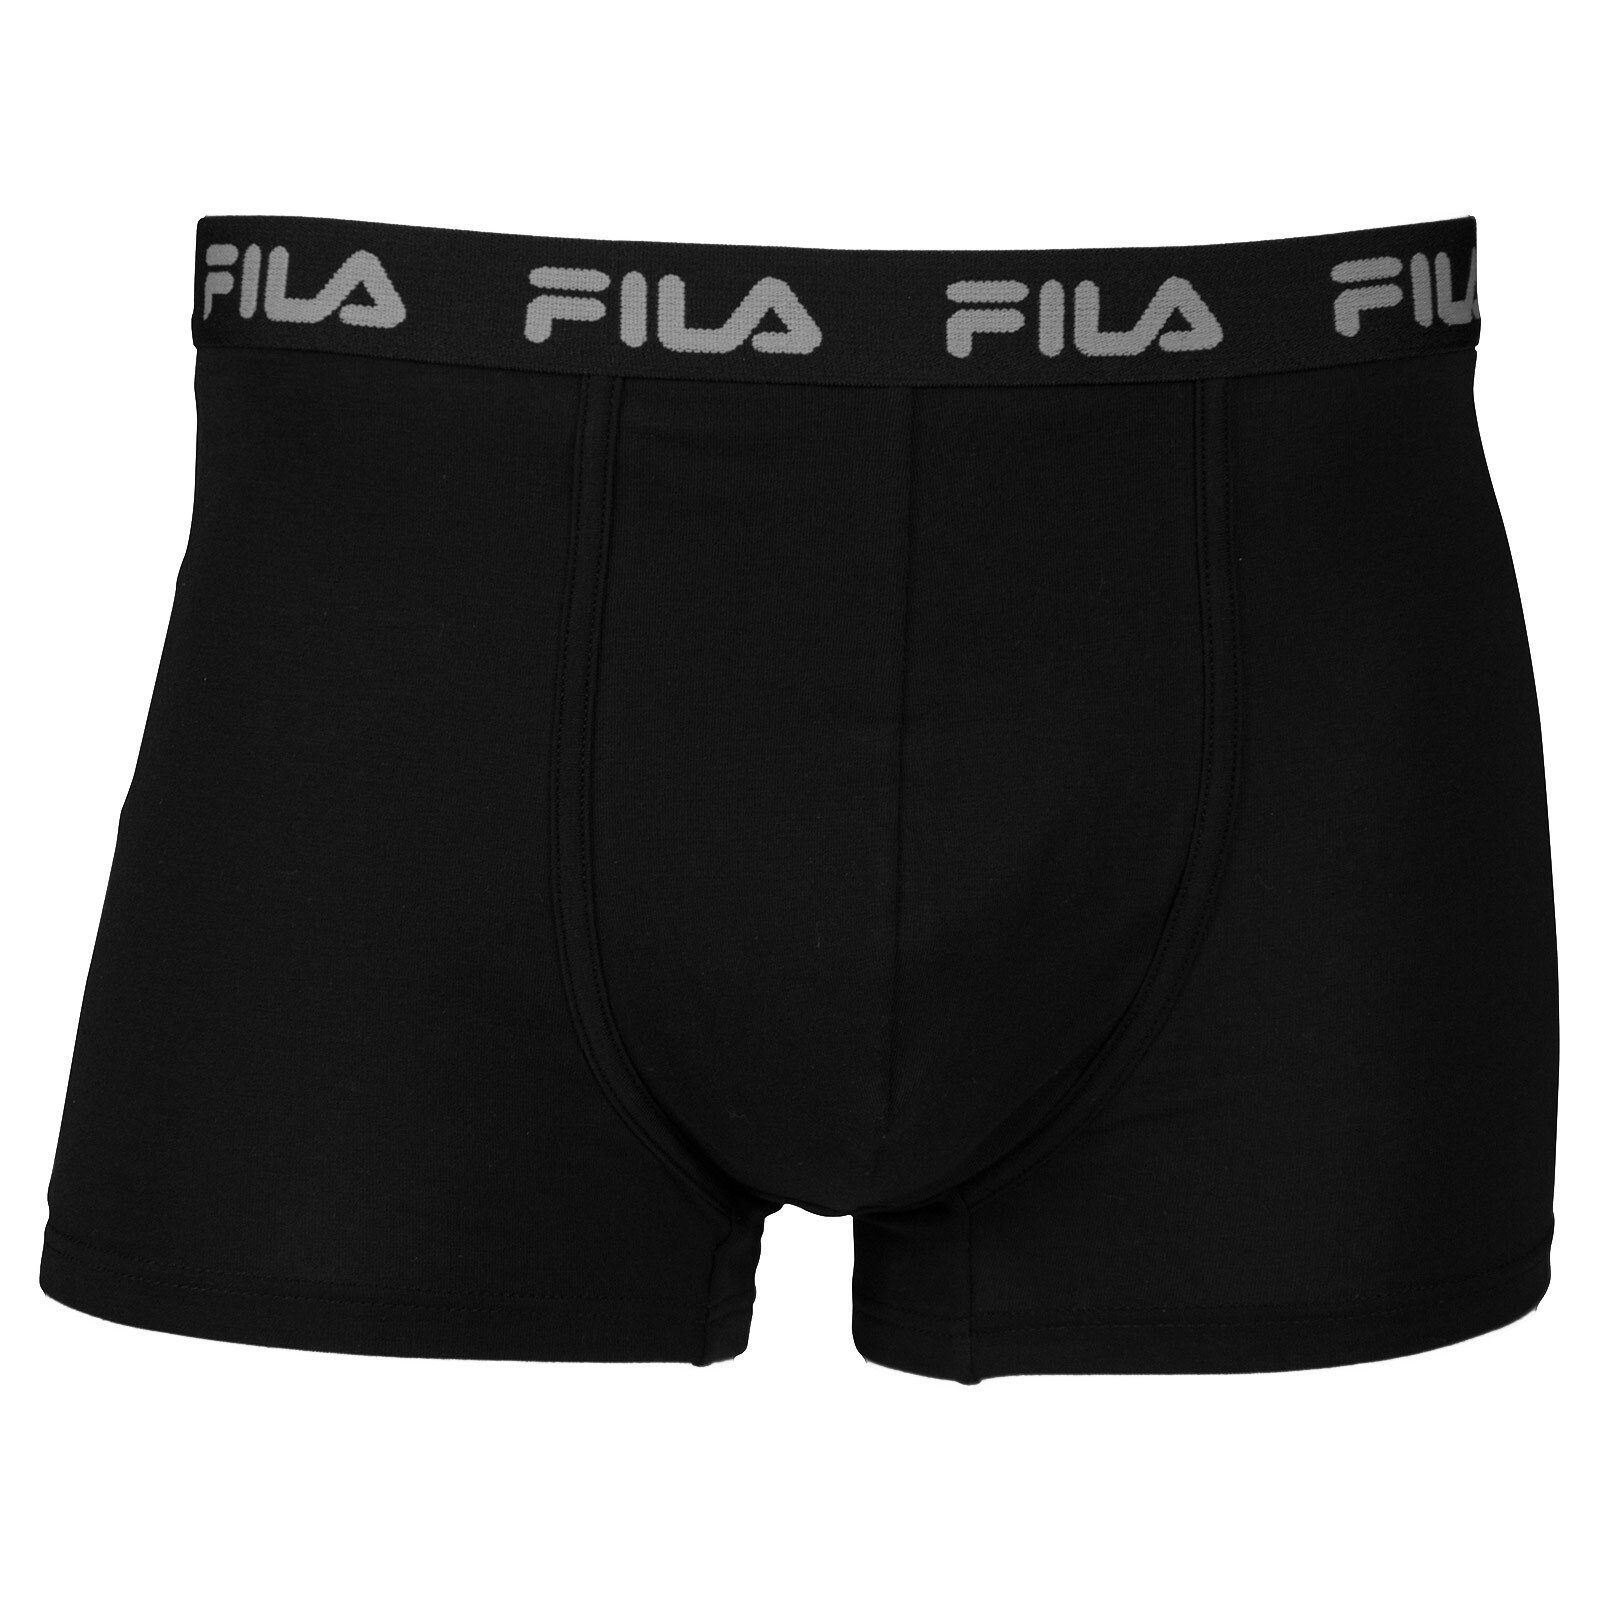 Fila Boxer Herren Basic Boxer Shorts, Elastic mit Logo - Schwarz (200)